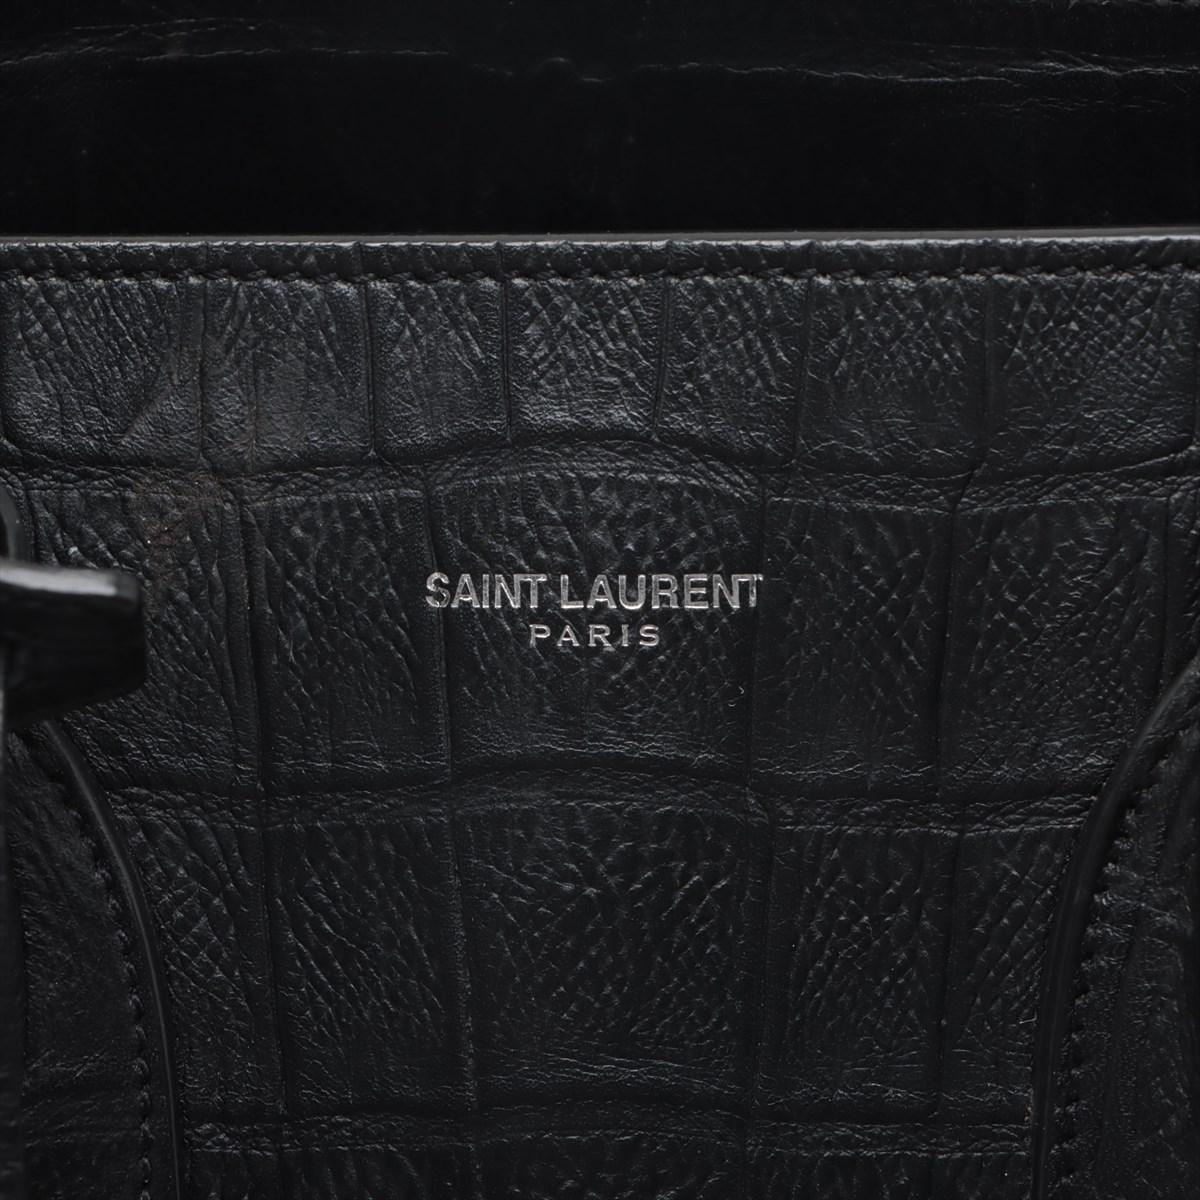 Saint Laurent Paris Sac de Jour Crocodile Embossed Leather Two-Way Handbag Black For Sale 10